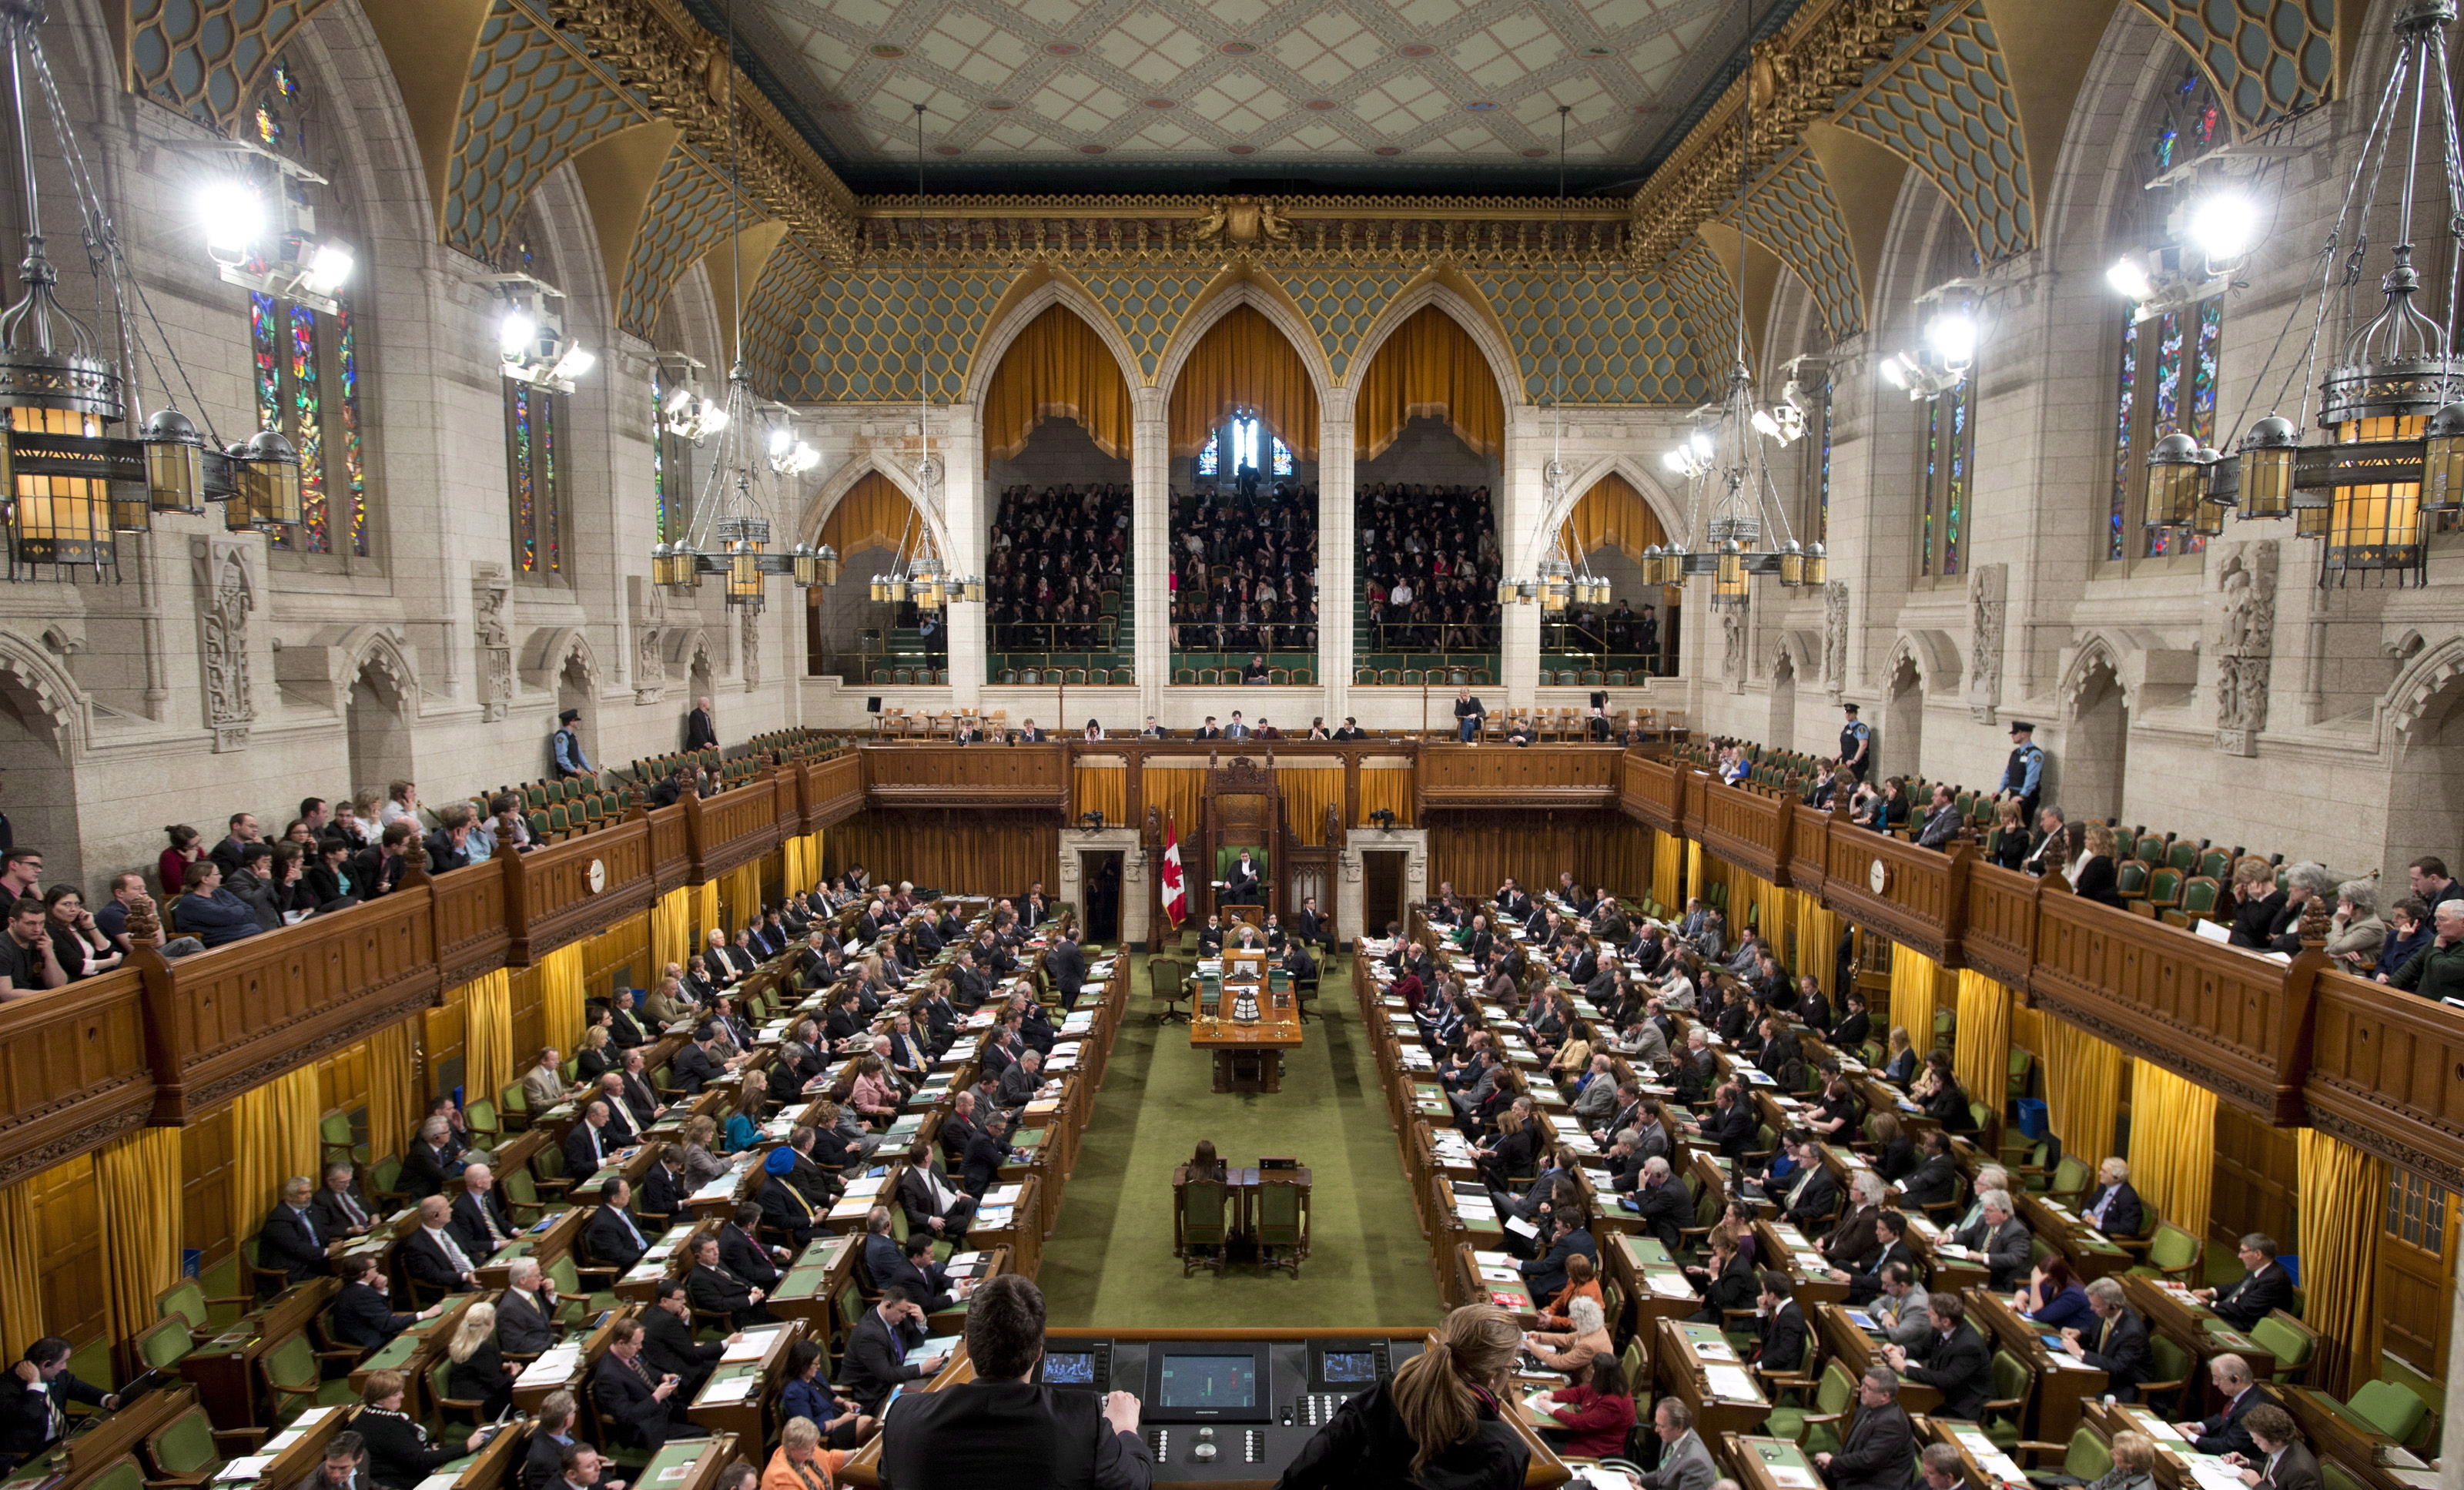 Палата общин с каким событием связано. Парламент Великобритании палата общин. Палаты общин (House of Commons). Нижняя палата парламента Великобритании. Палаты парламента Канады.